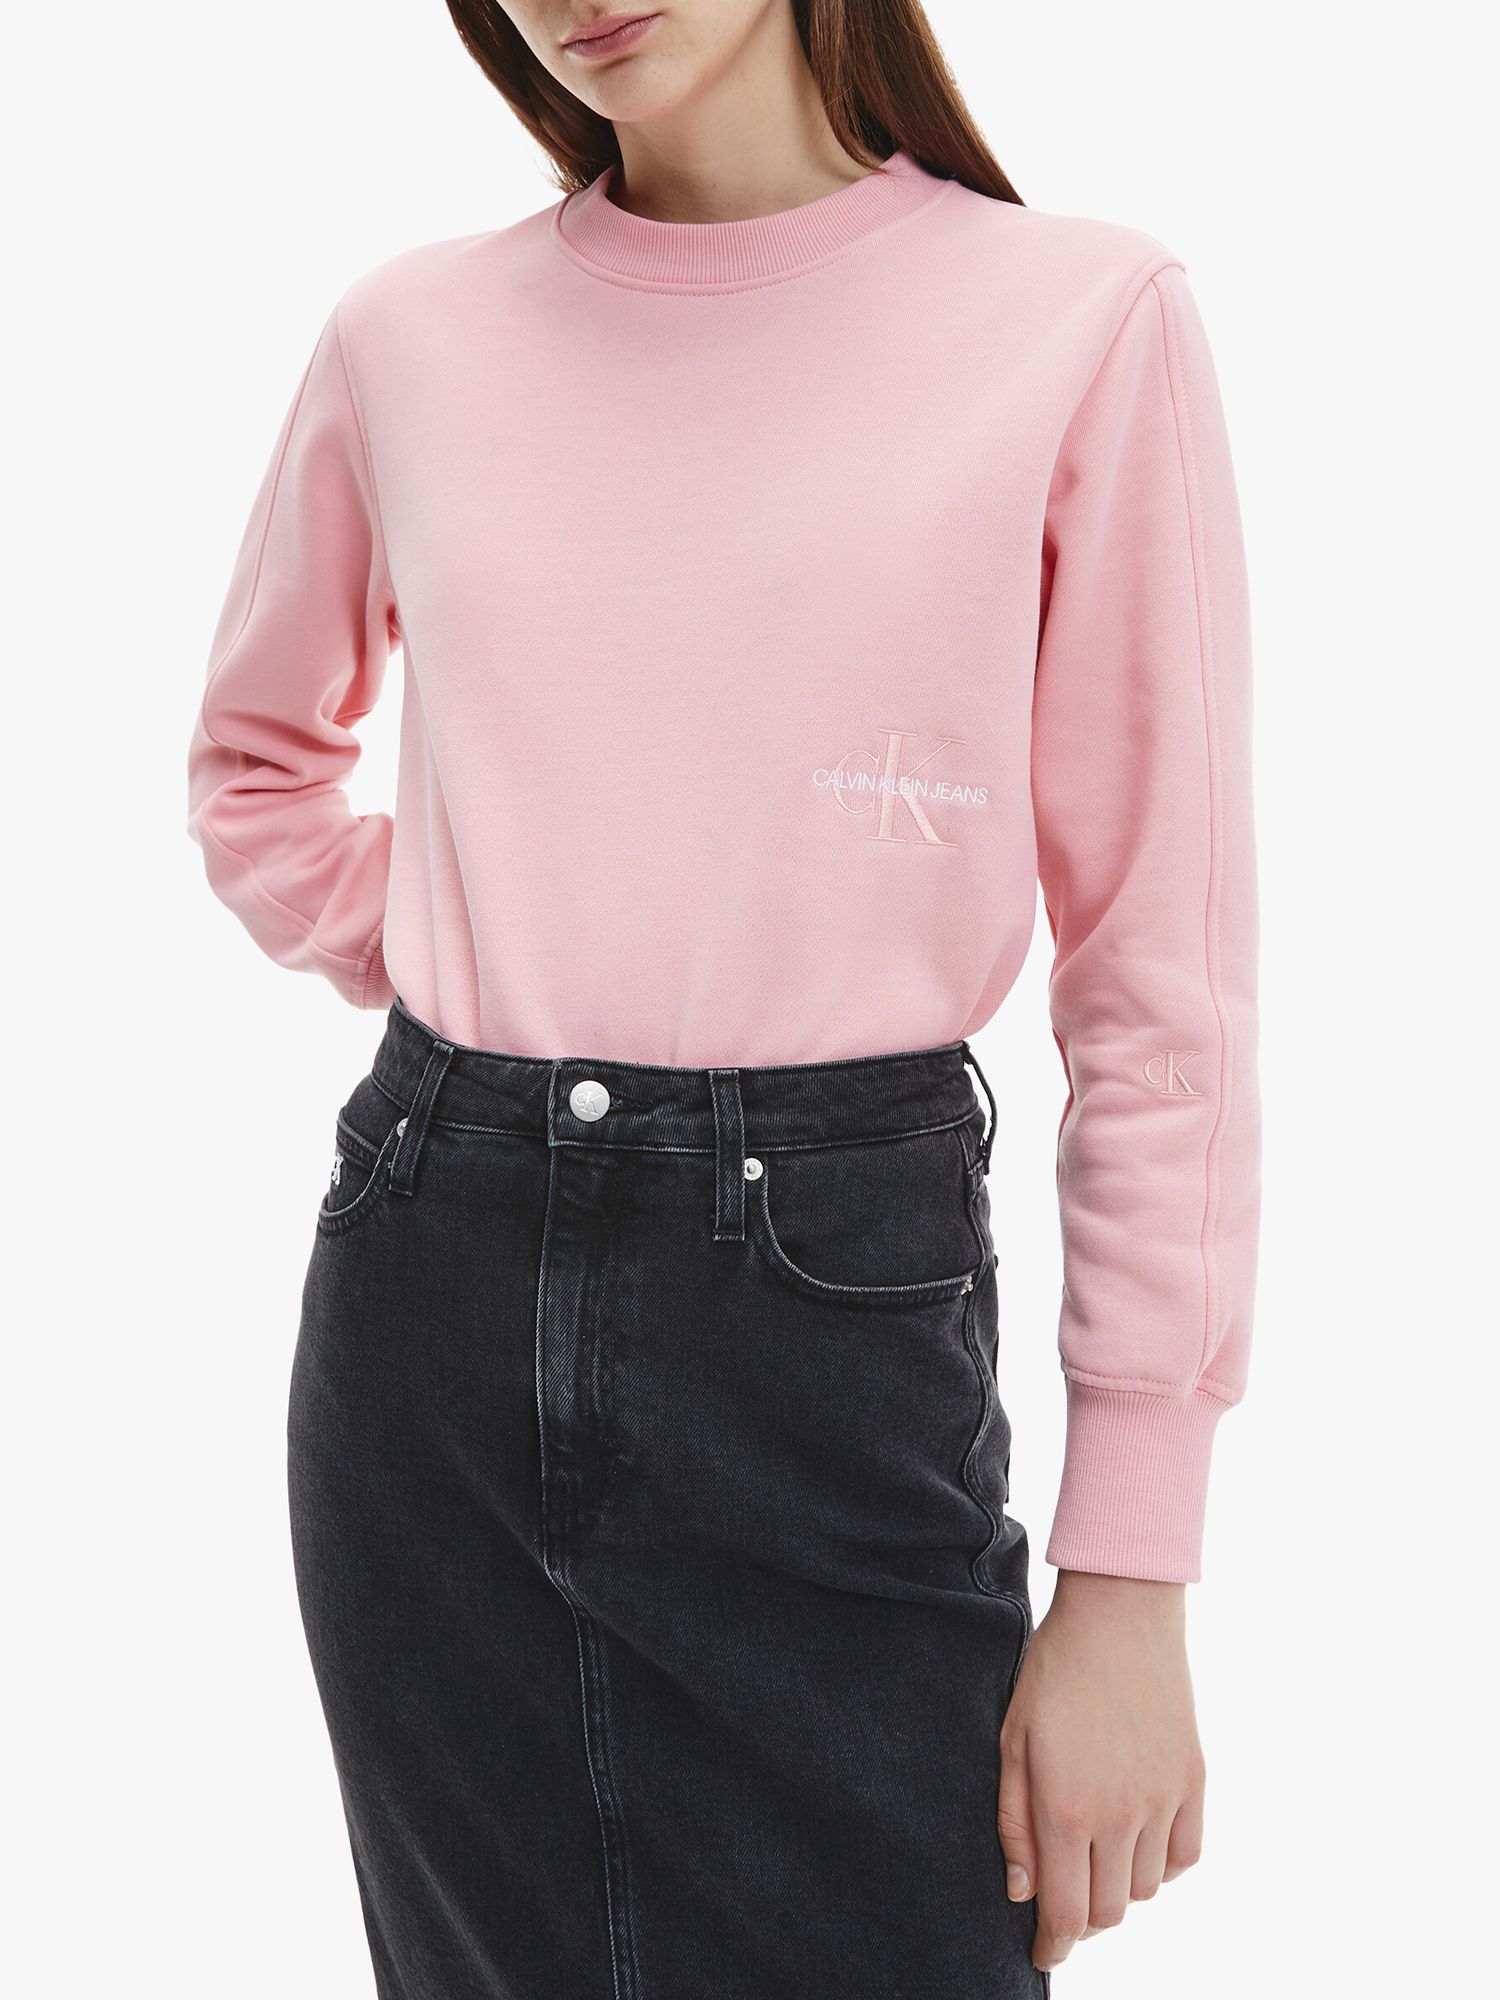 Calvin Klein Jeans Crew Neck Sweatshirt, Soft Berry